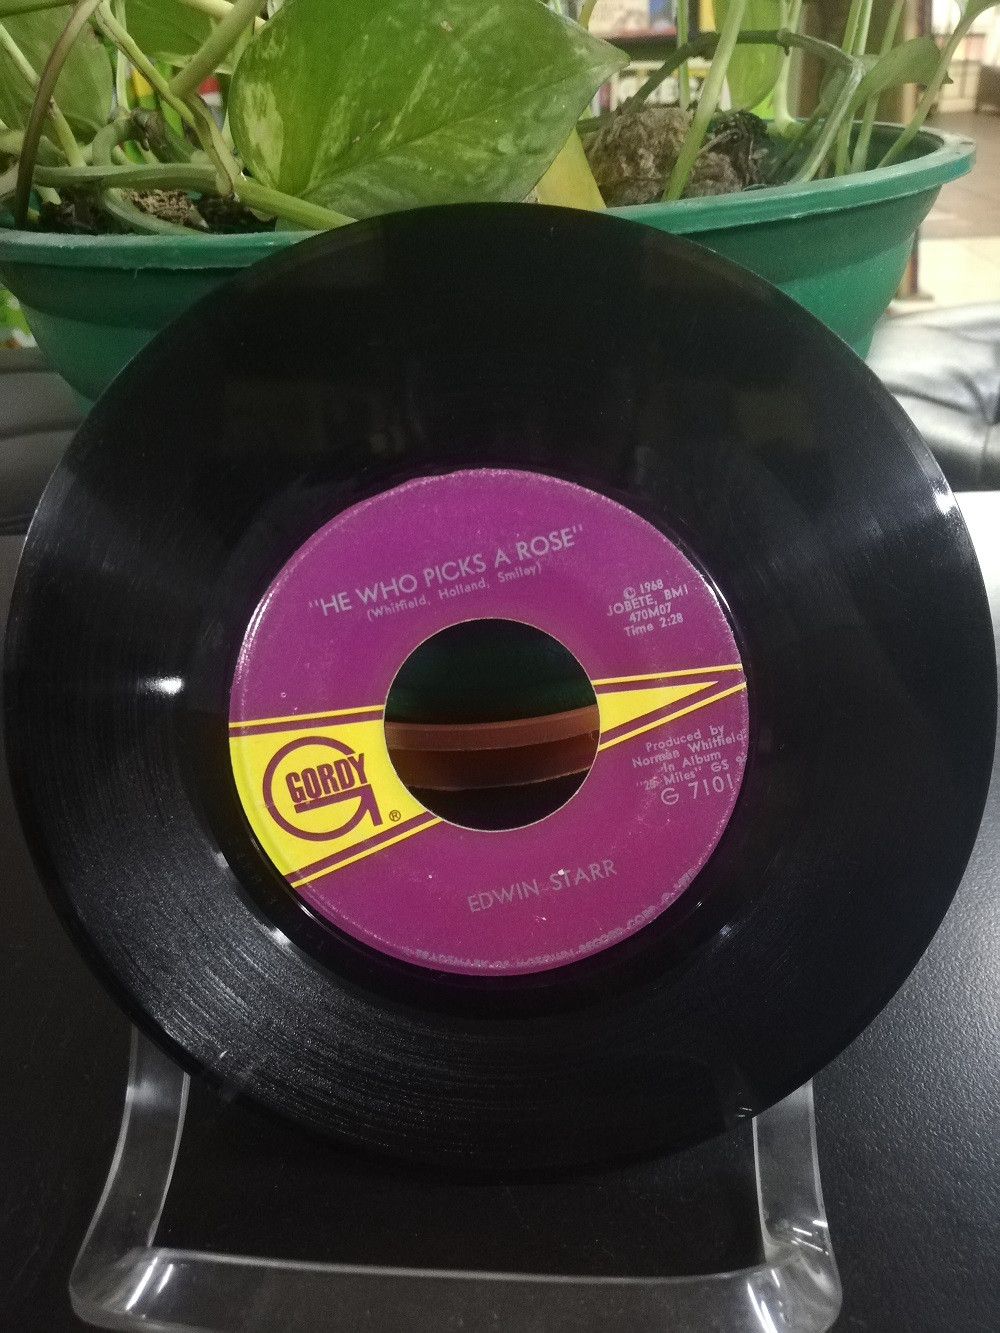 Imagen LP IMPORTADO 45 RPM EDWIN STARR - HE WHO PICKS A ROSE/WAR 2